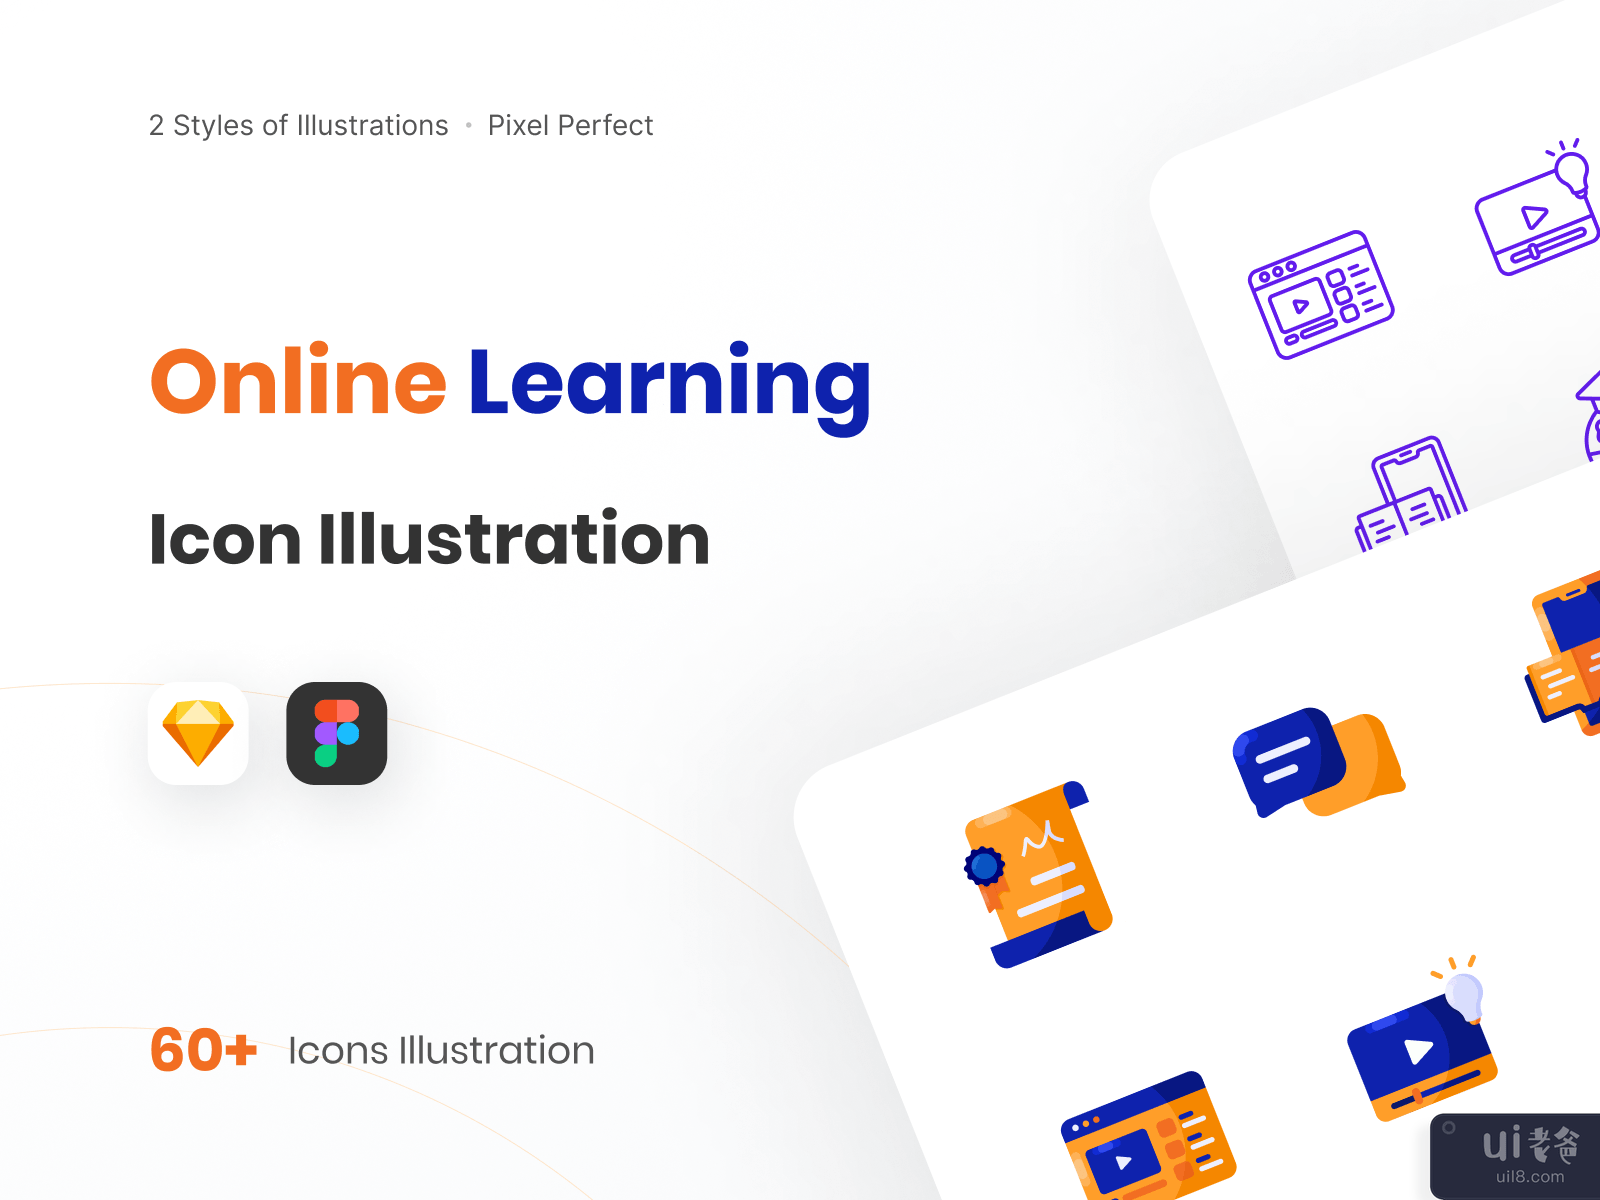 在线学习图标说明-混合风格(Online Learning Icon Illustration - Mix Style)插图